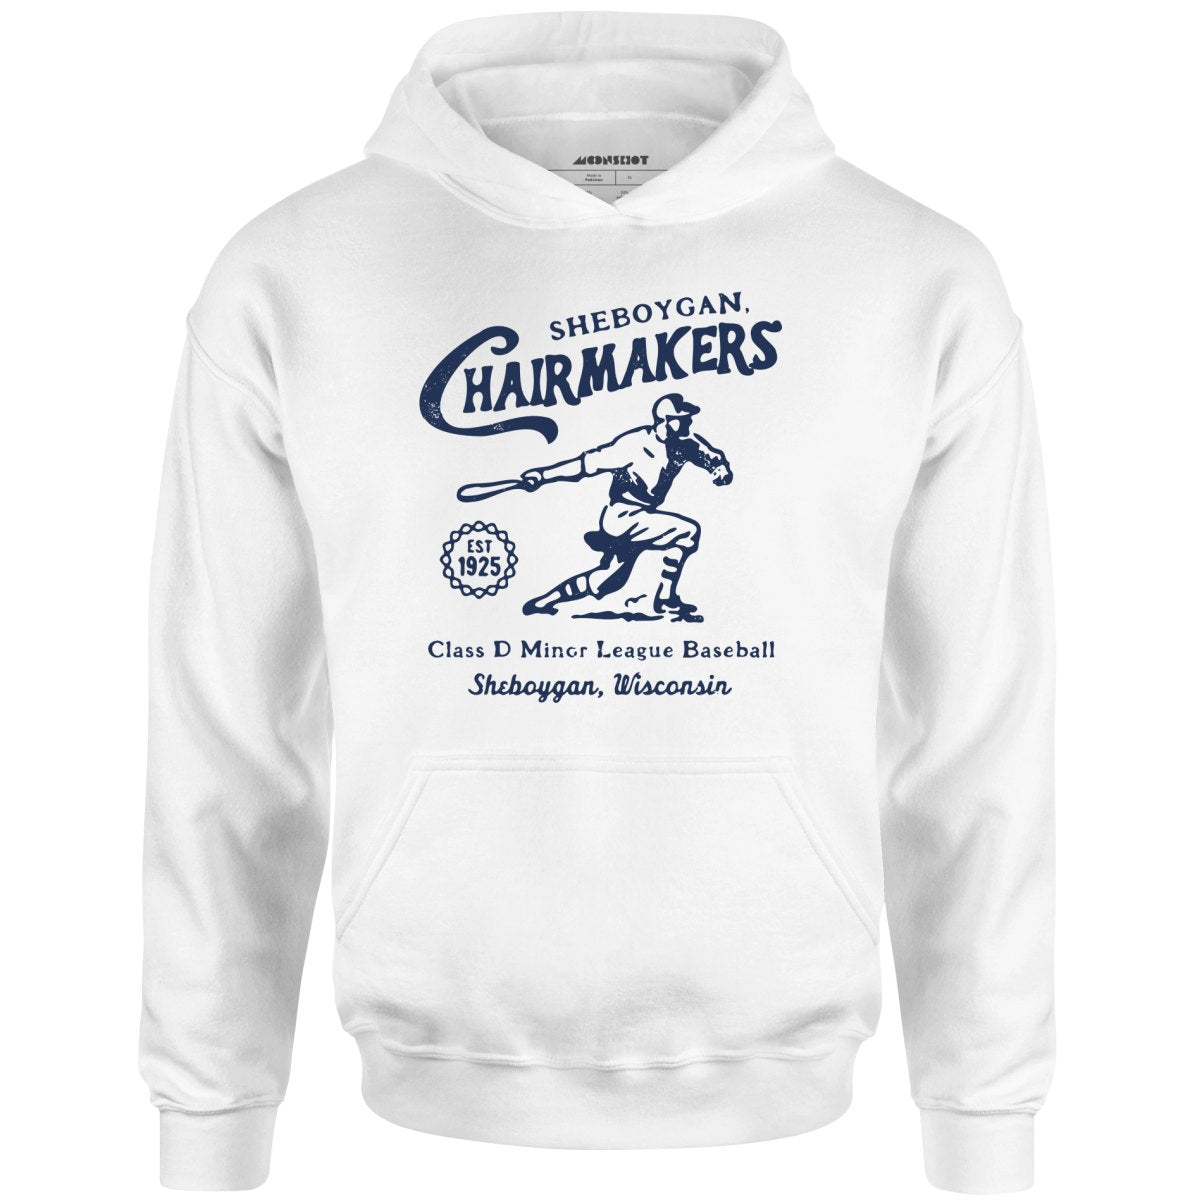 Sheboygan Chairmakers - Wisconsin - Vintage Defunct Baseball Teams - Unisex Hoodie